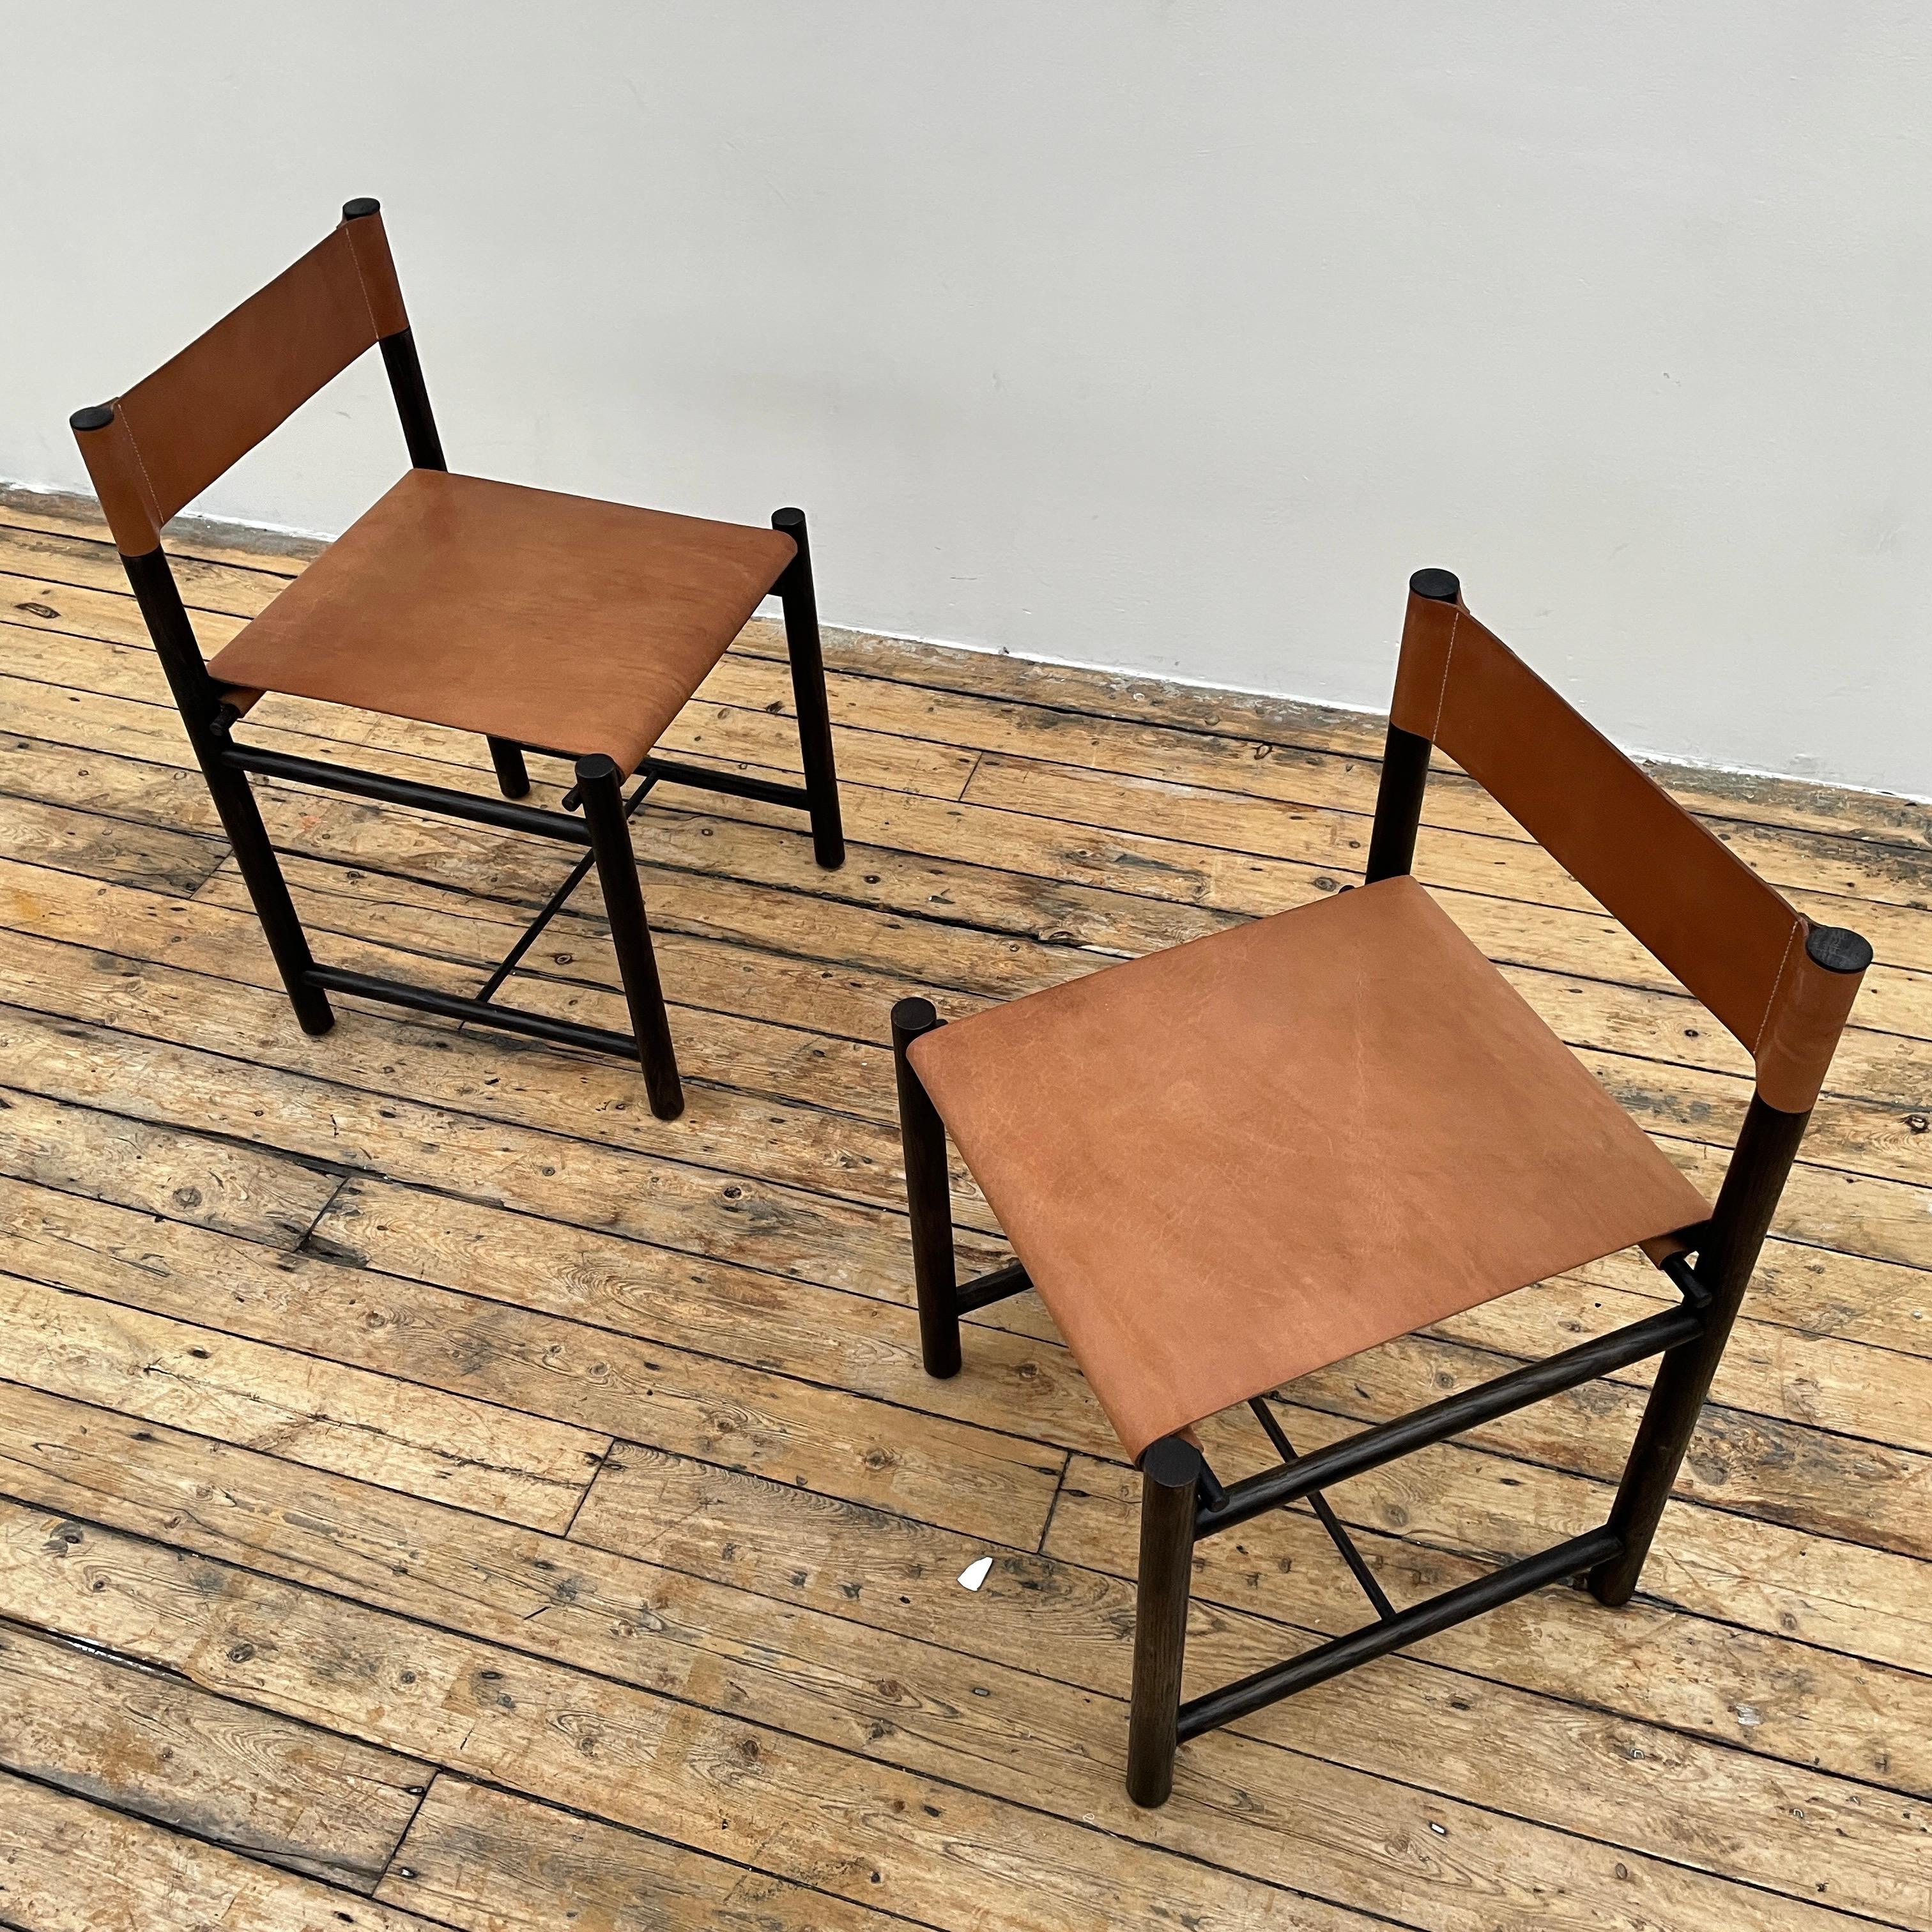 Schwarzer Looping-Stuhl von Fred Rigby Studio.
Abmessungen: T 45 x B 45 x H 74 cm.
MATERIALIEN: Ebonisiertes Eichenholz, Leder.
Erhältlich in Eiche natur oder schwarz.

In Anlehnung an das Original des Loop Chair haben wir mit unserer